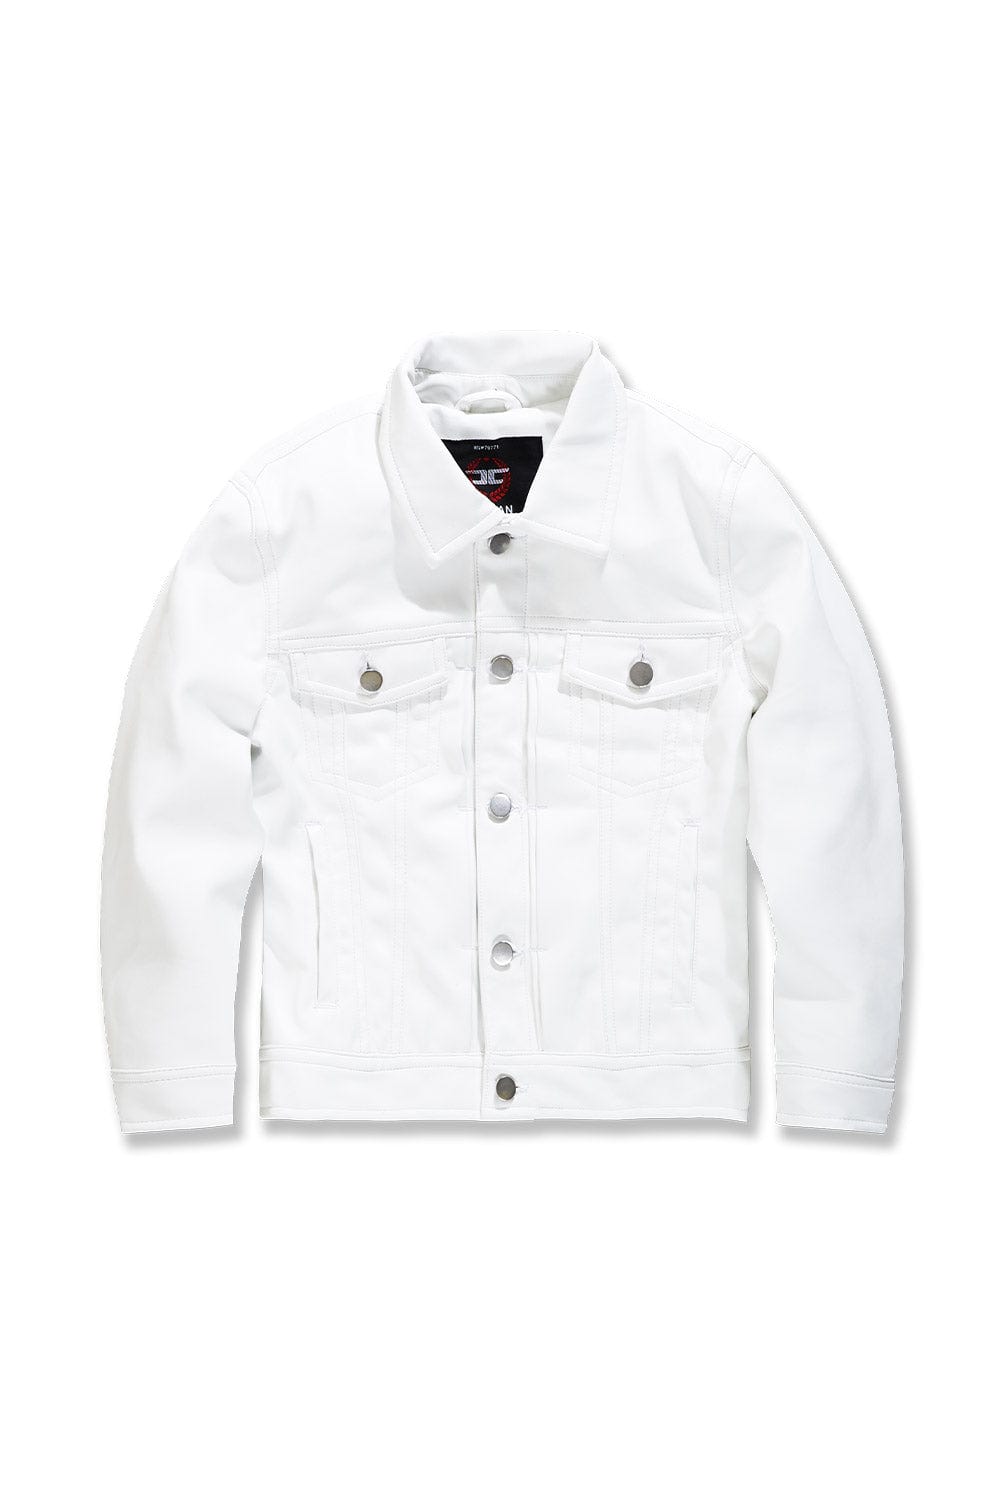 JC Kids Kids Thriller Trucker Jacket (White) 2 / White